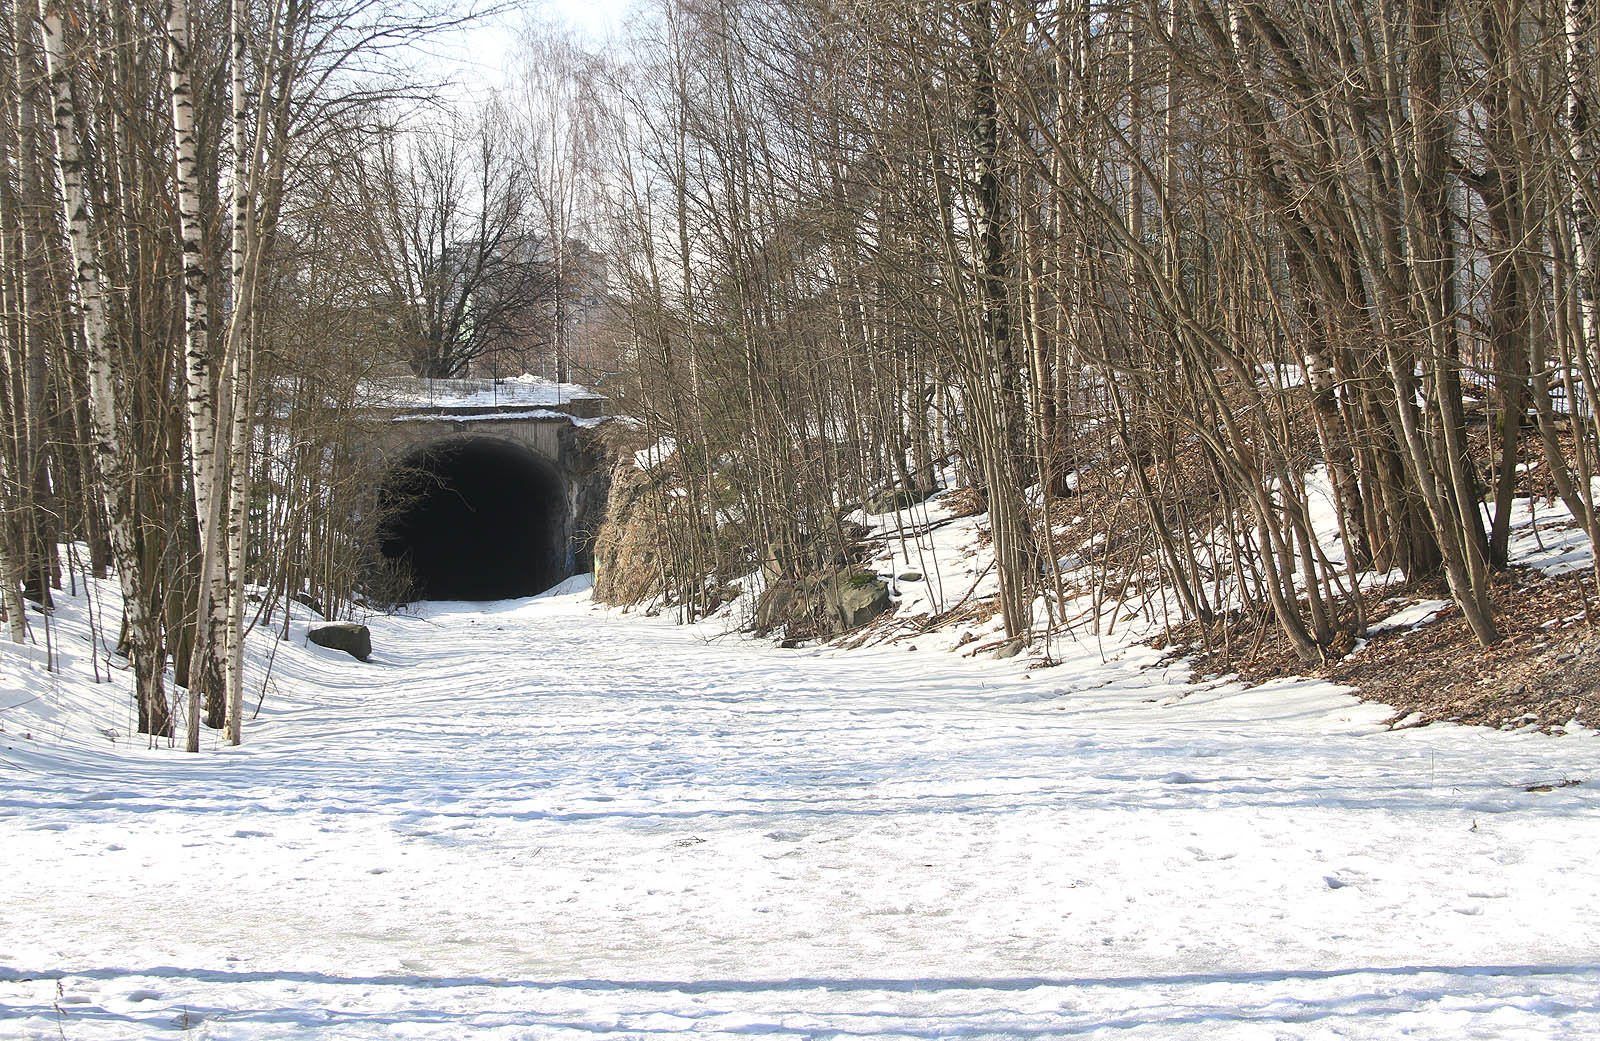 Od roku 2012 nevedou koleje ani parkem za tunelem. Náspu bývalé vlečky, která sloužila jen půlstoletí, využívají běžci a cyklisté.